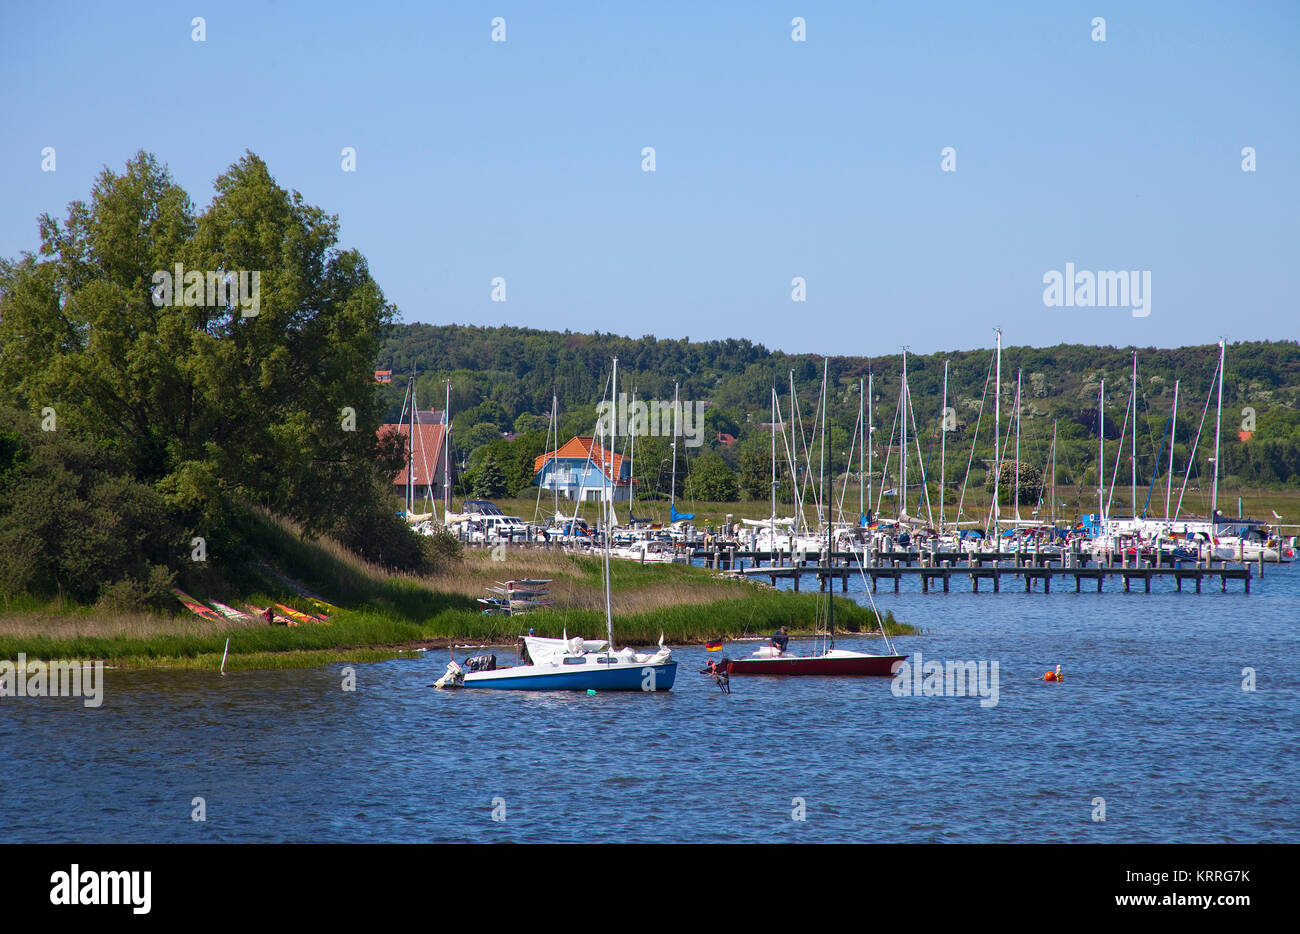 Yachthafen von Vitte, Hiddensee, Vitter Bodden, Ostsee, East Germany, Eastern Germany, Mecklenburg-Vorpommern, Deutschland, Europa | Yachting harbour  Stock Photo